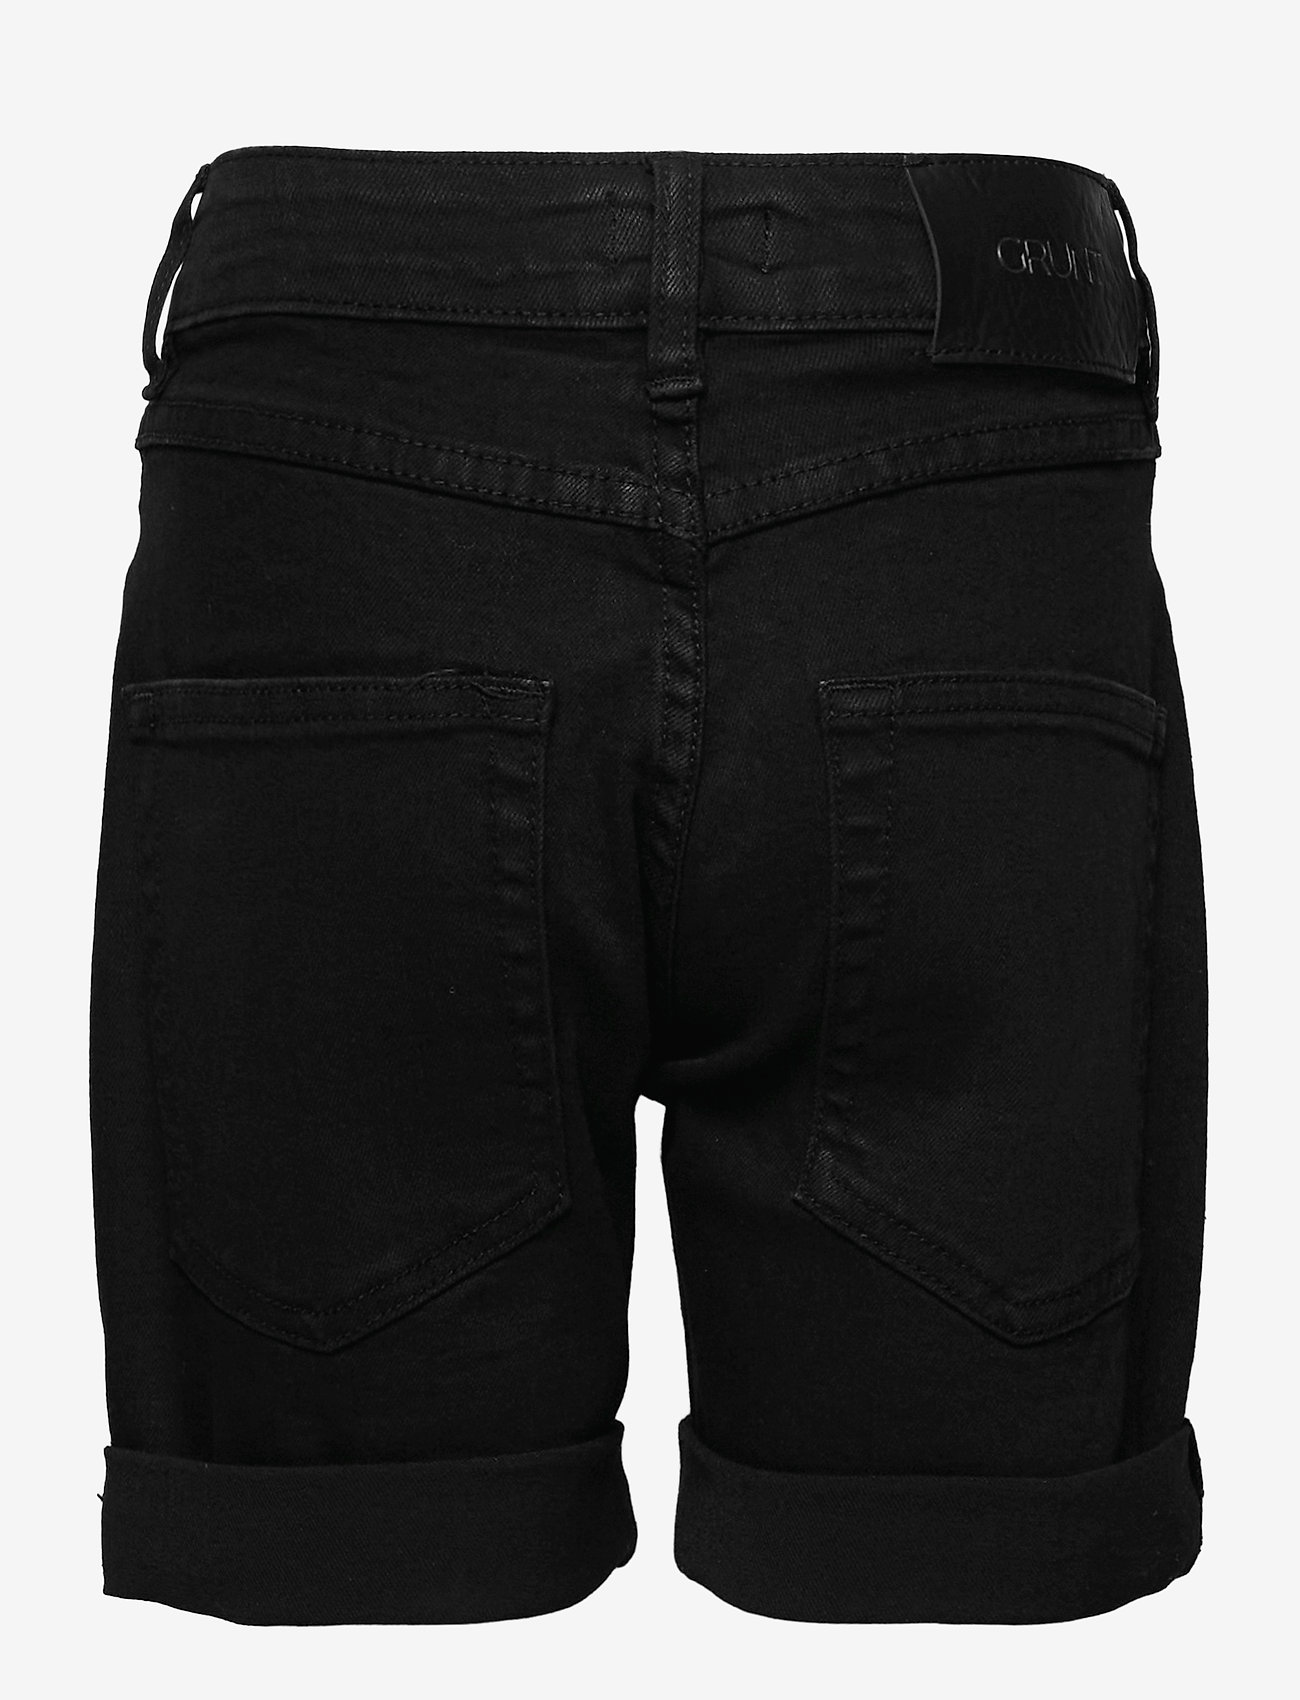 Grunt - Stay Black Shorts - denimshorts - black - 1